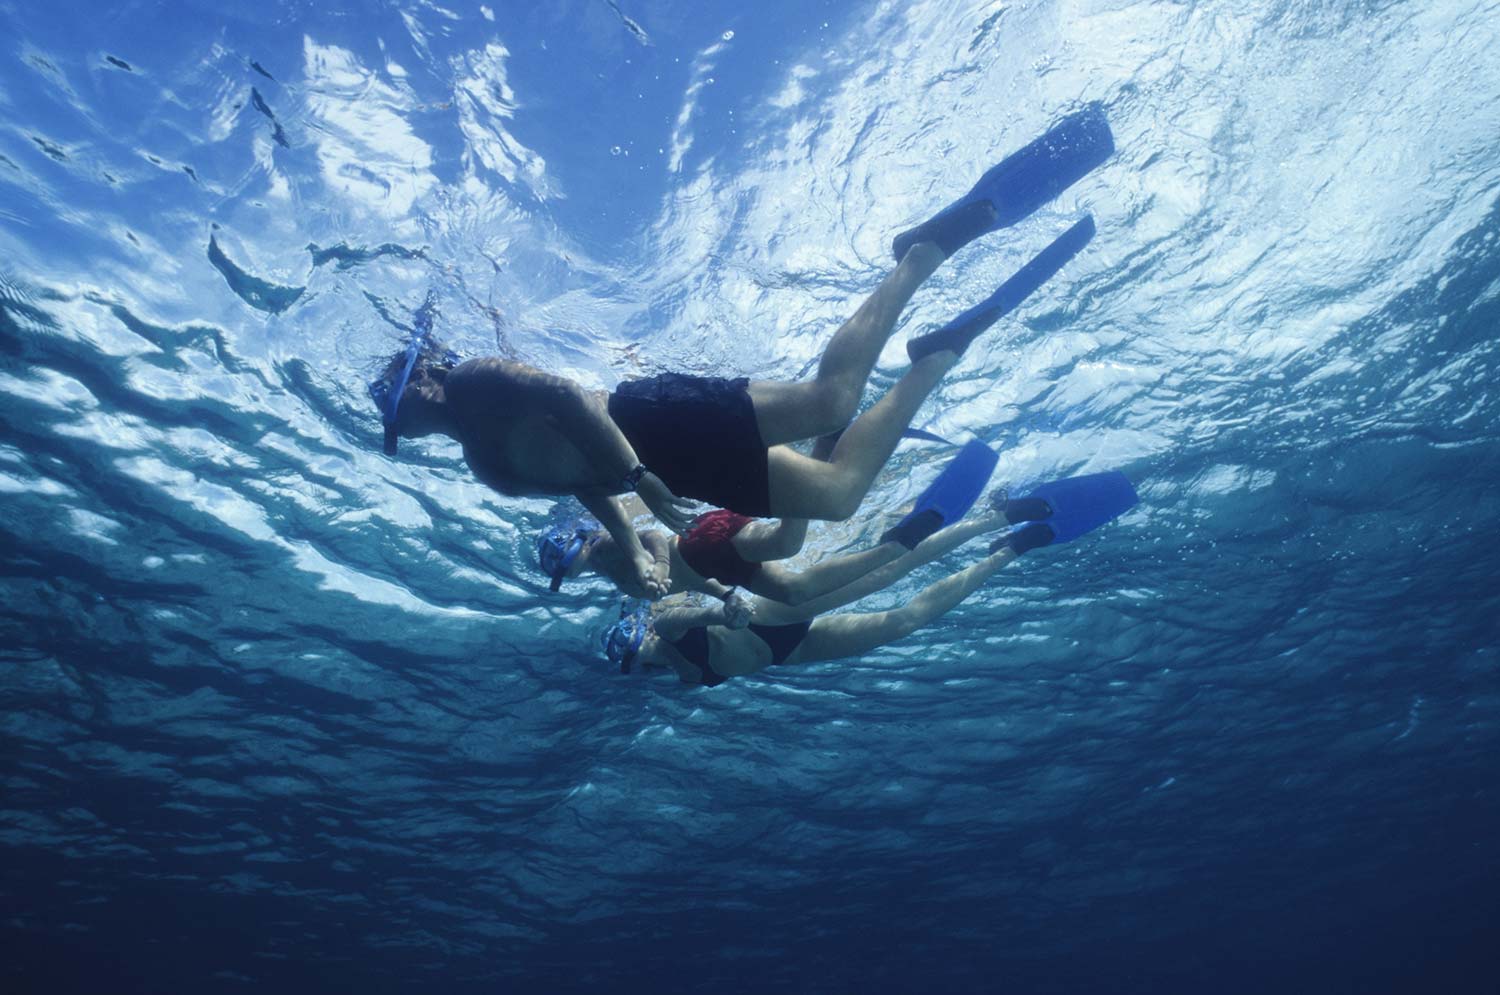 Image de l'article : Partez en groupe pour une croisière snorkeling aux Maldives - Esprit Pionnier